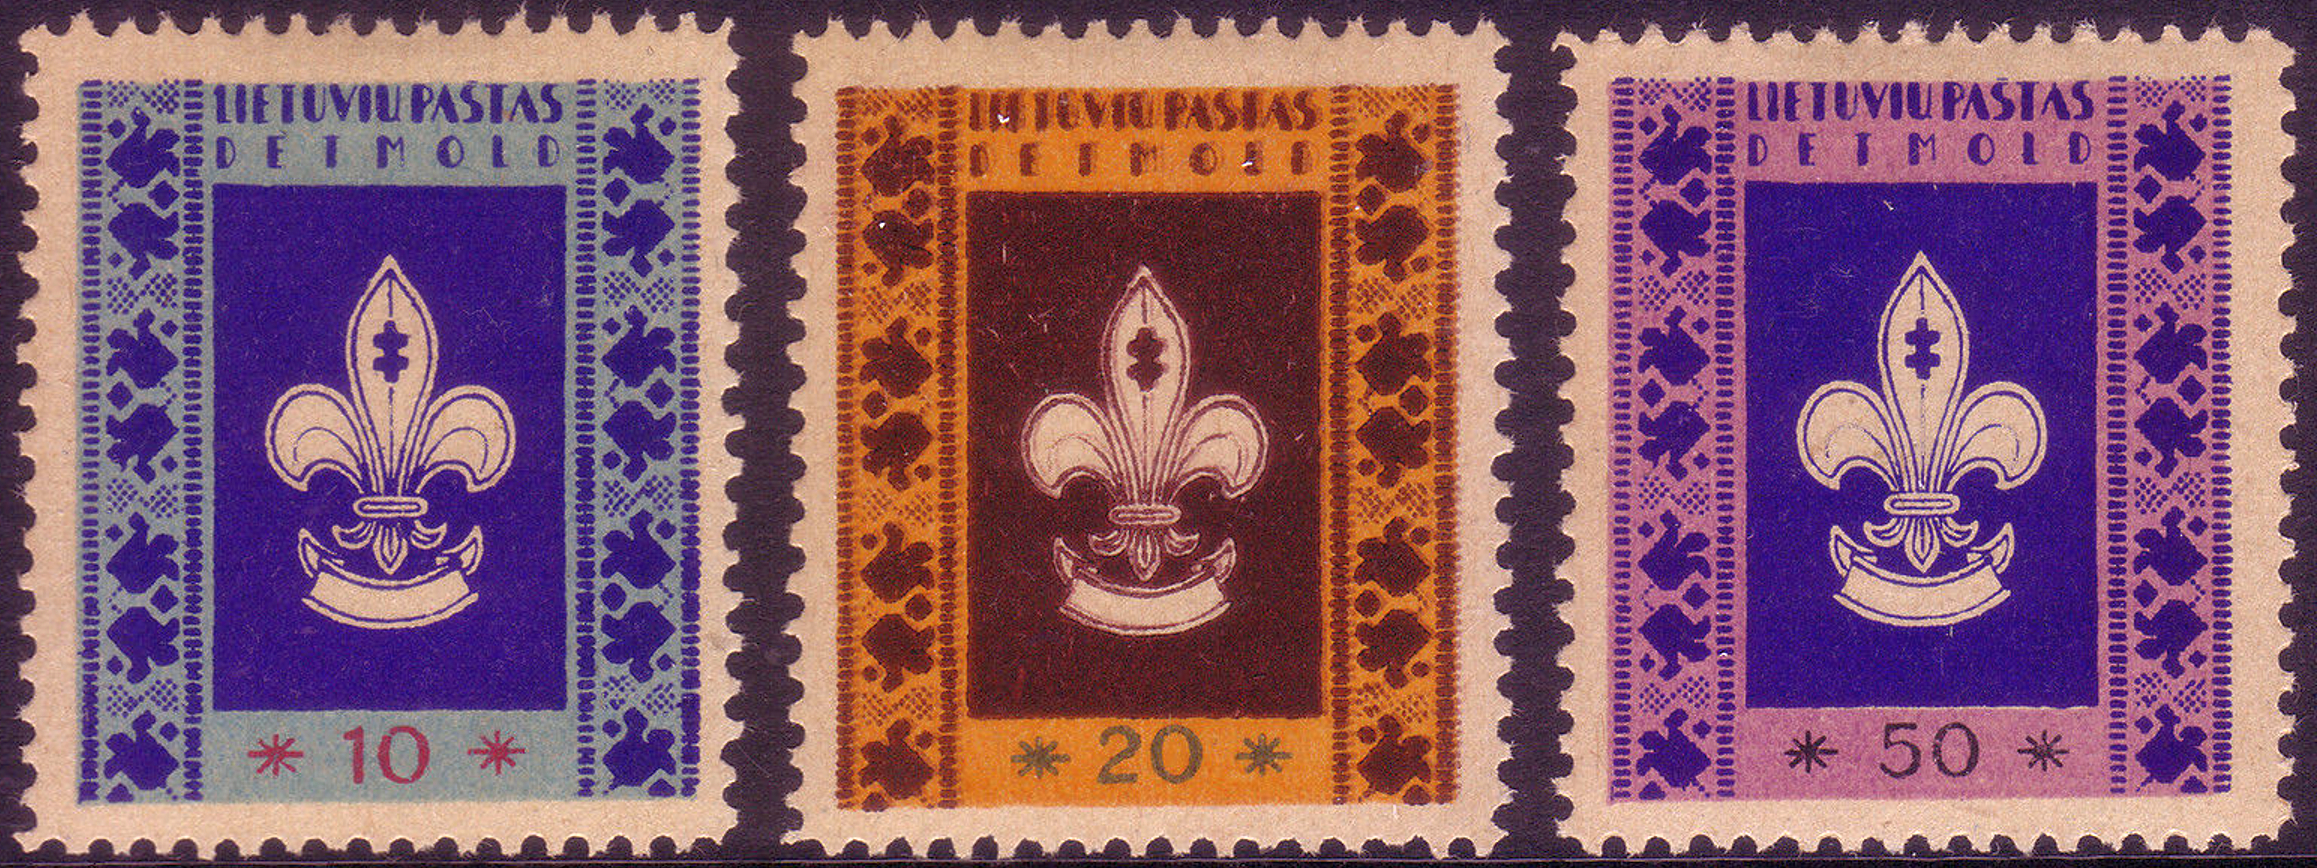 camp post stamp Detmold